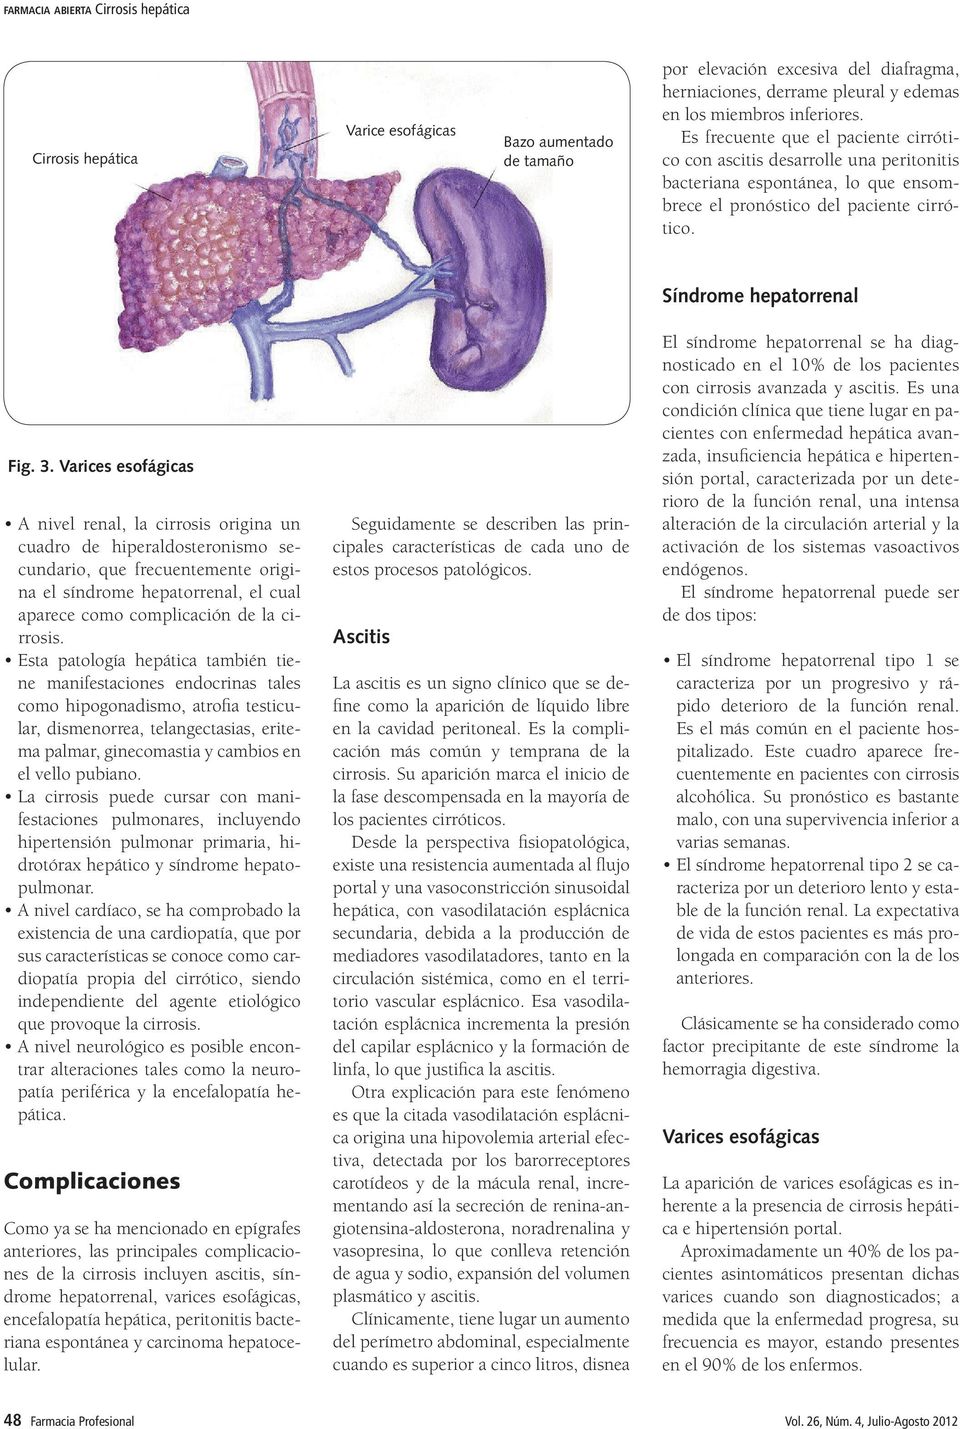 Varices esofágicas A nivel renal, la cirrosis origina un cuadro de hiperaldosteronismo secundario, que frecuentemente origina el síndrome hepatorrenal, el cual aparece como complicación de la